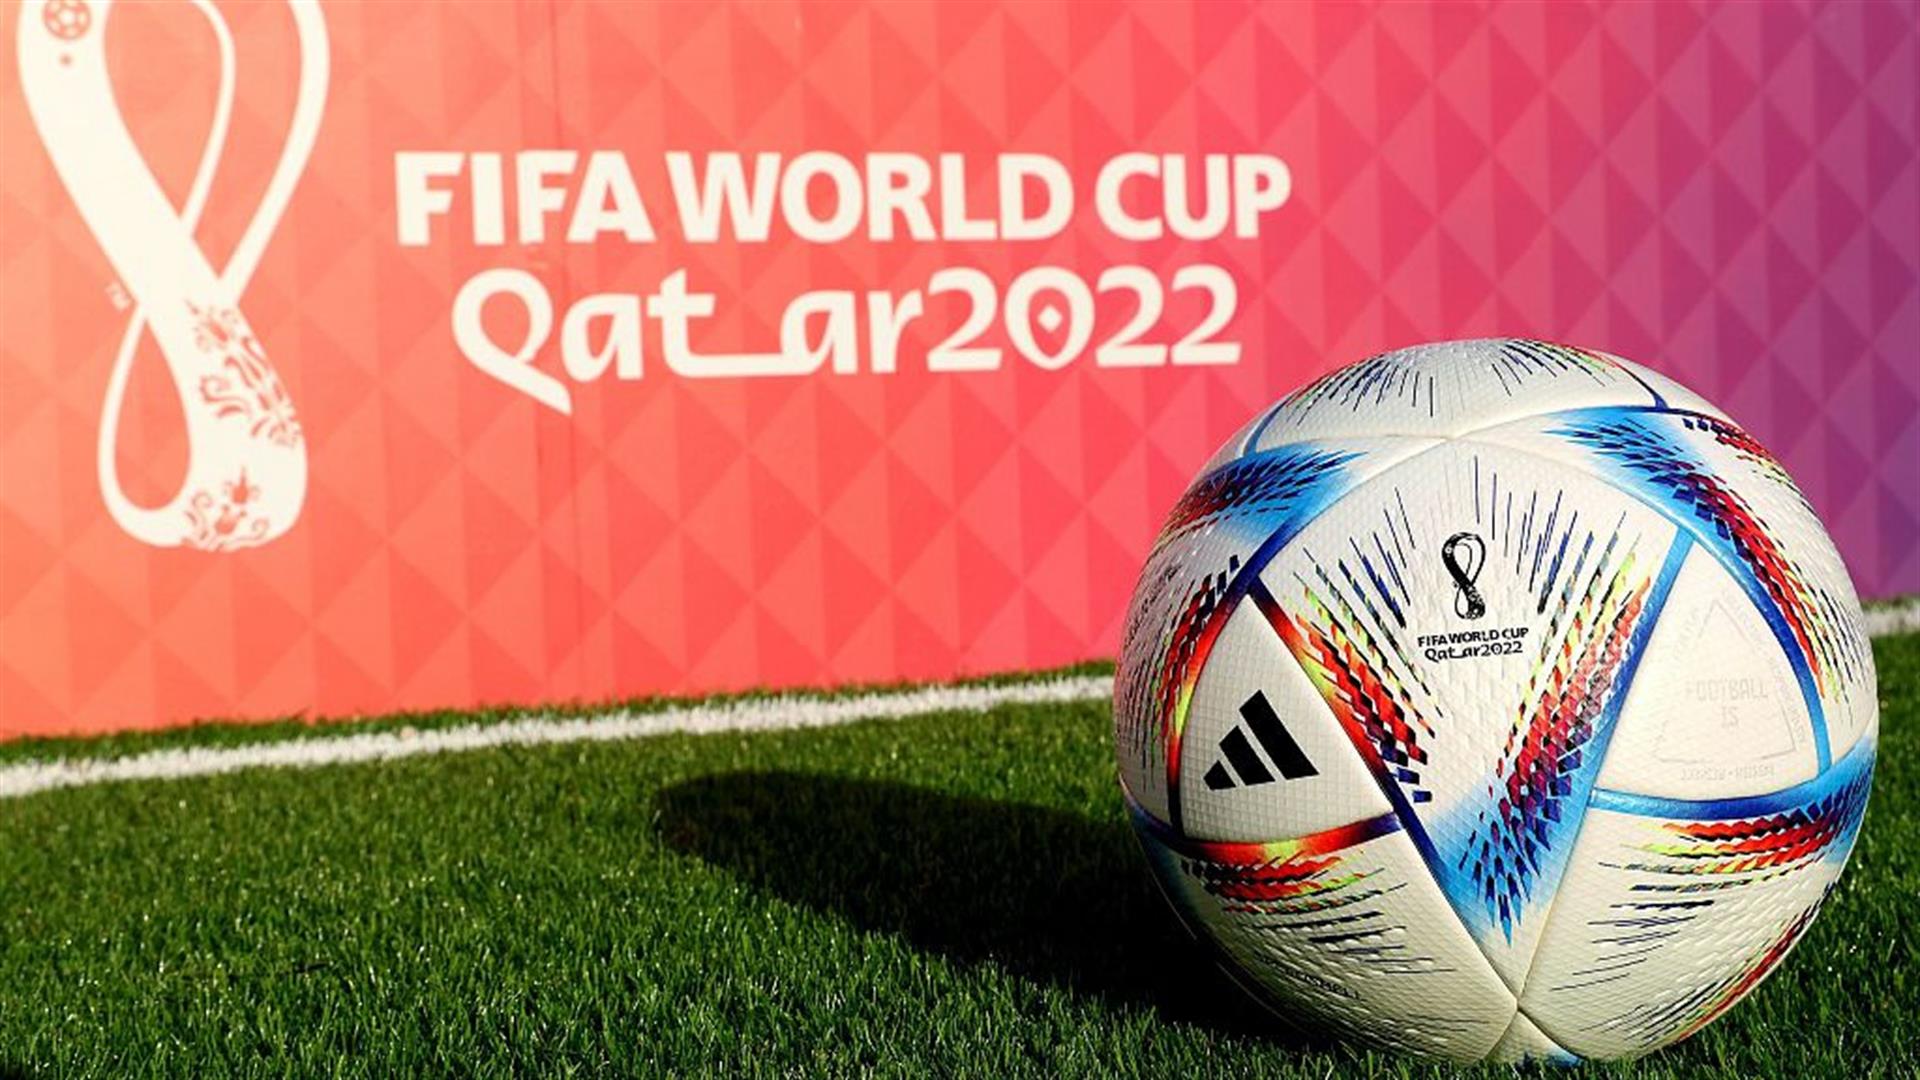 ¿Cuándo empieza el Mundial de Qatar 2022?